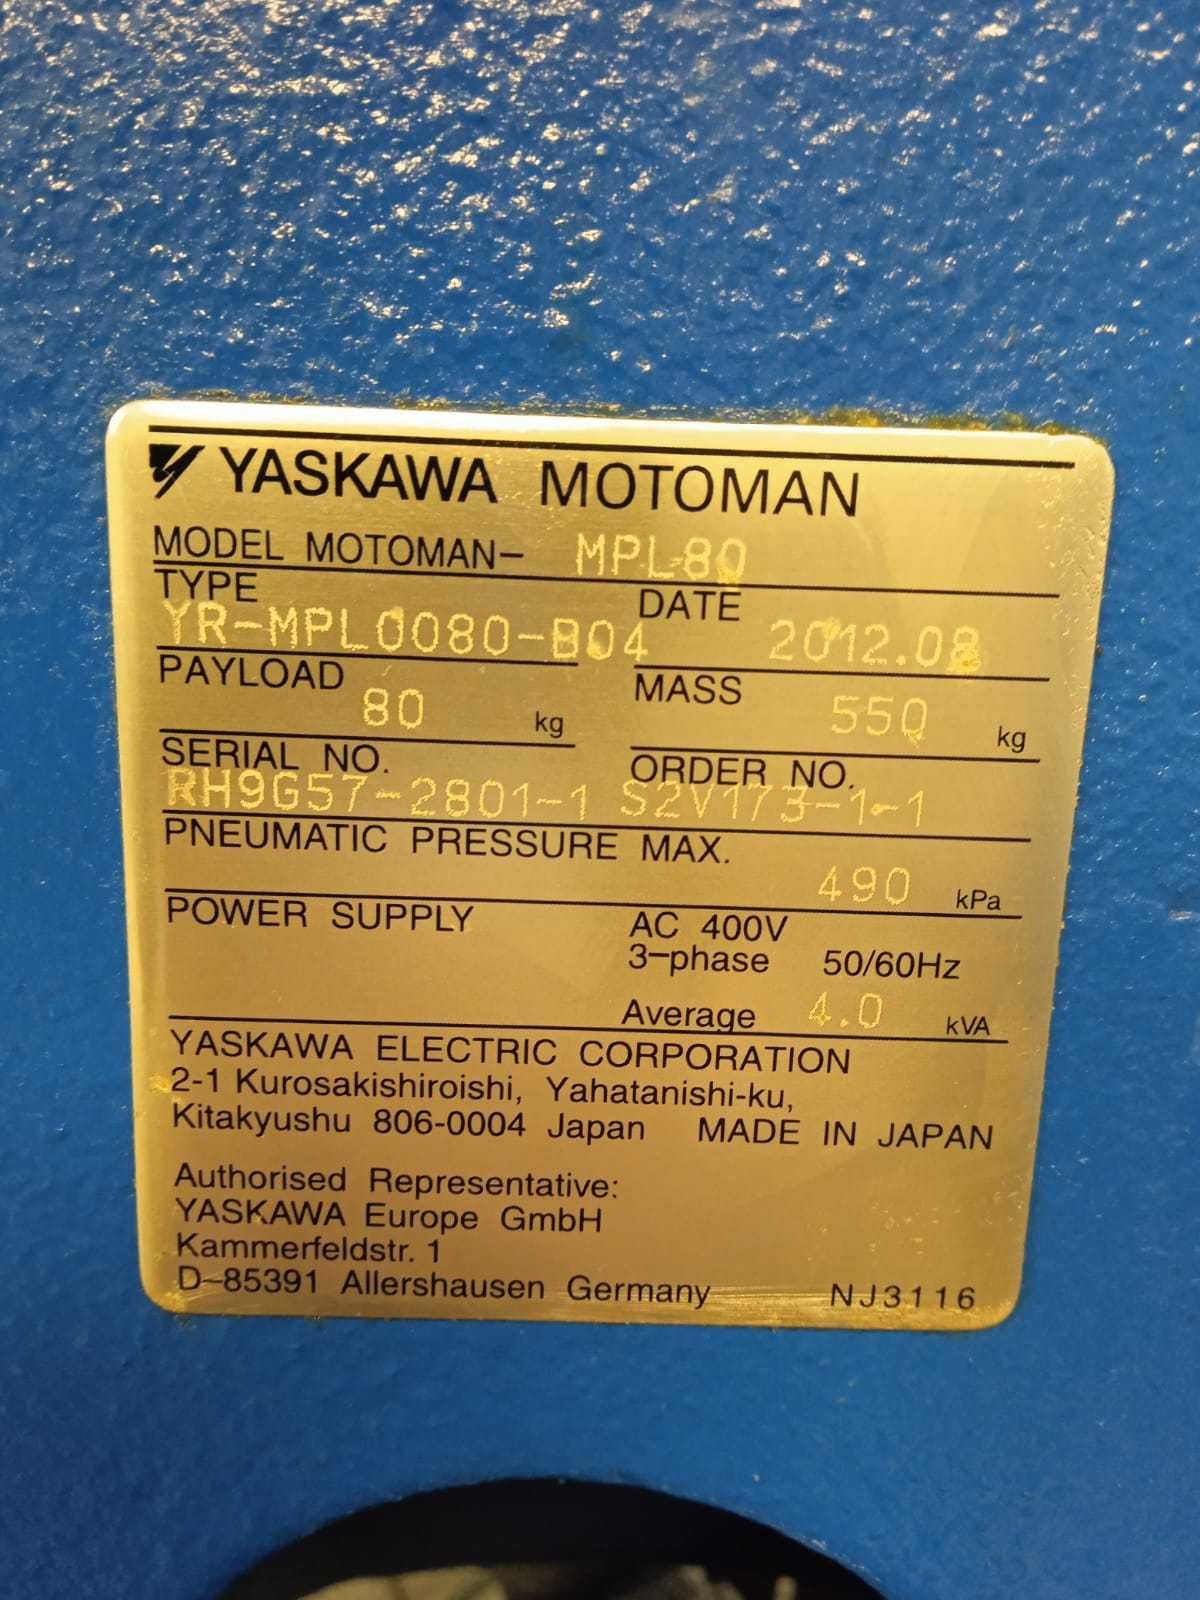 YASKAWA MPL-80. 5-axis Palletizing Robot